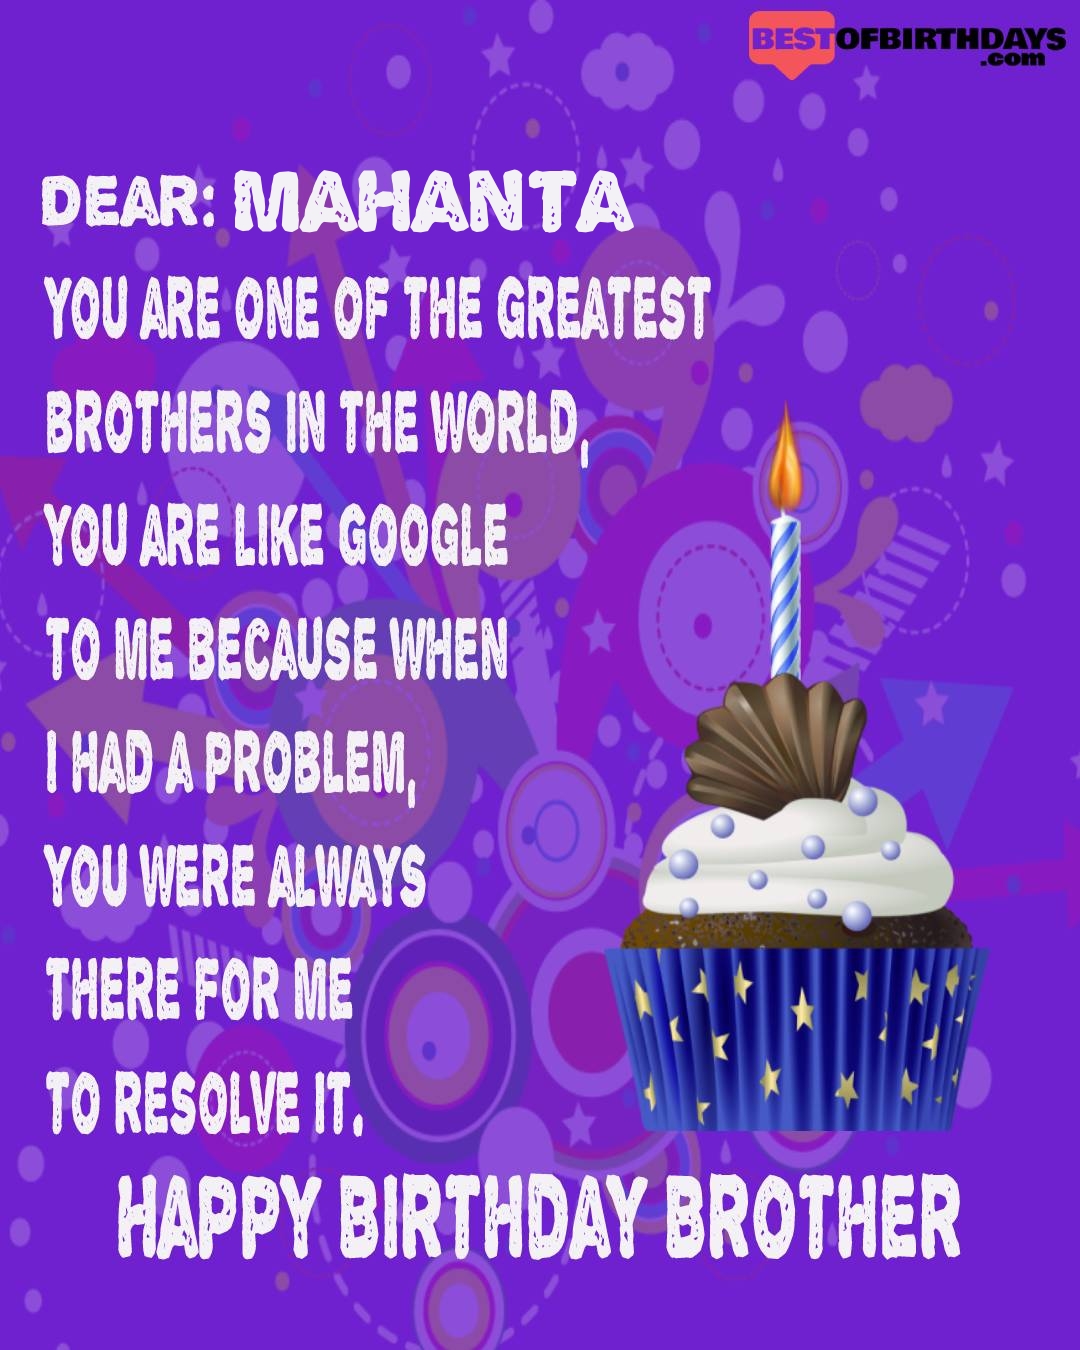 Happy birthday mahanta bhai brother bro